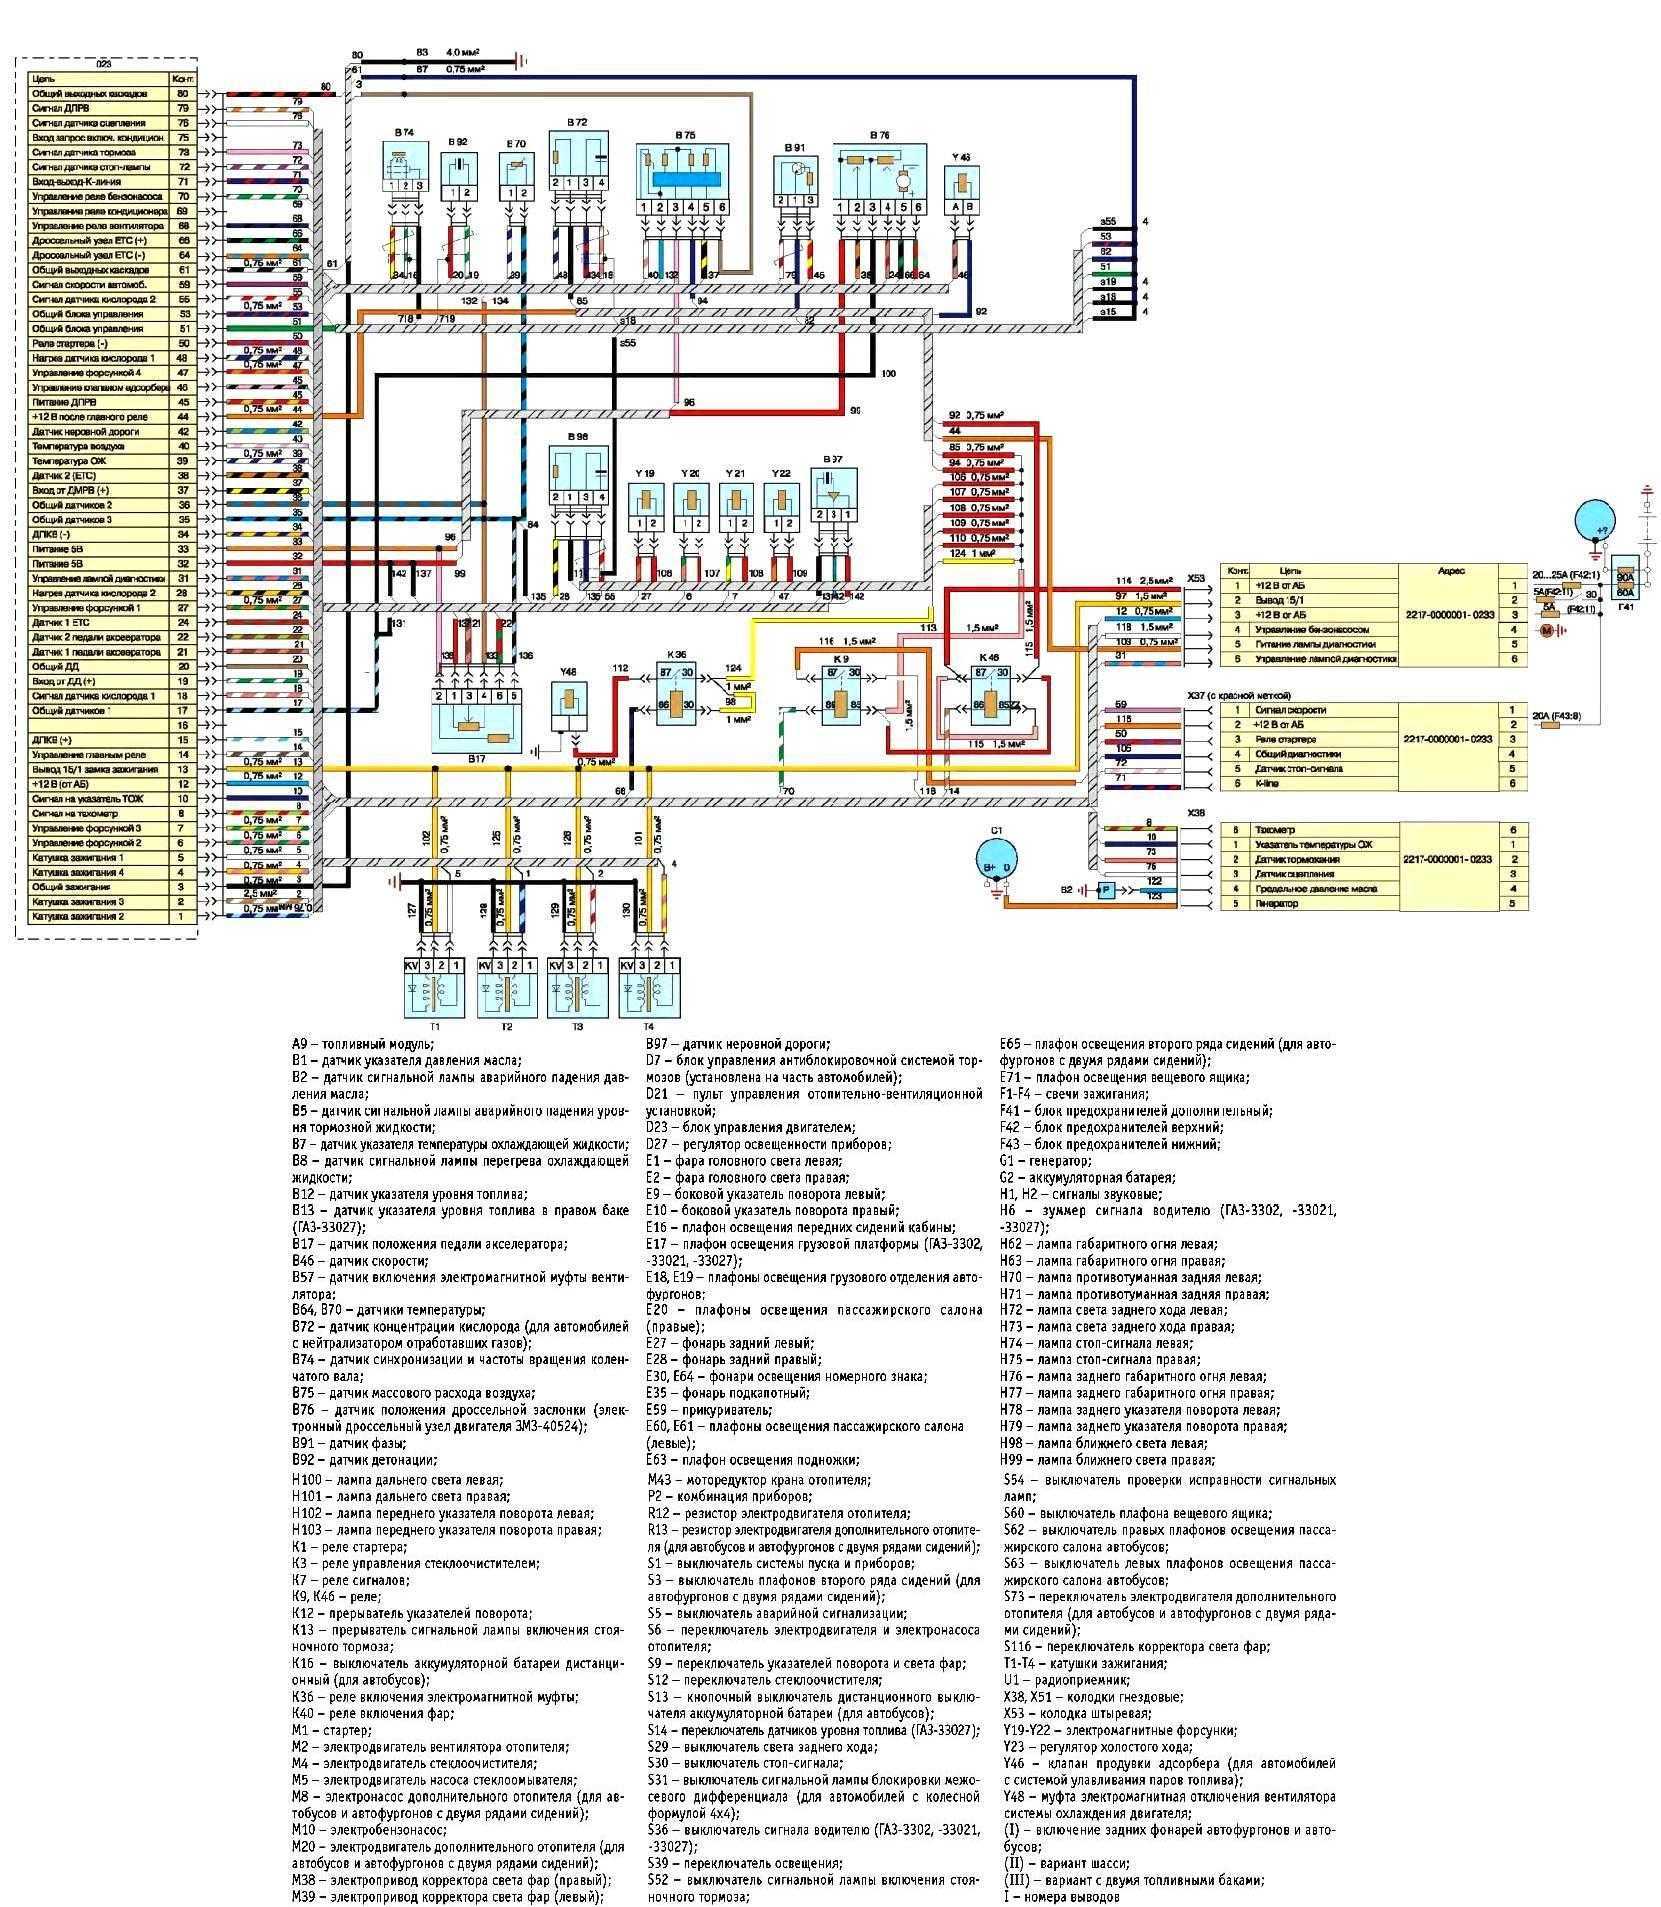 Схема СУД автомобиля Газель с двигателем ЗМЗ-40524